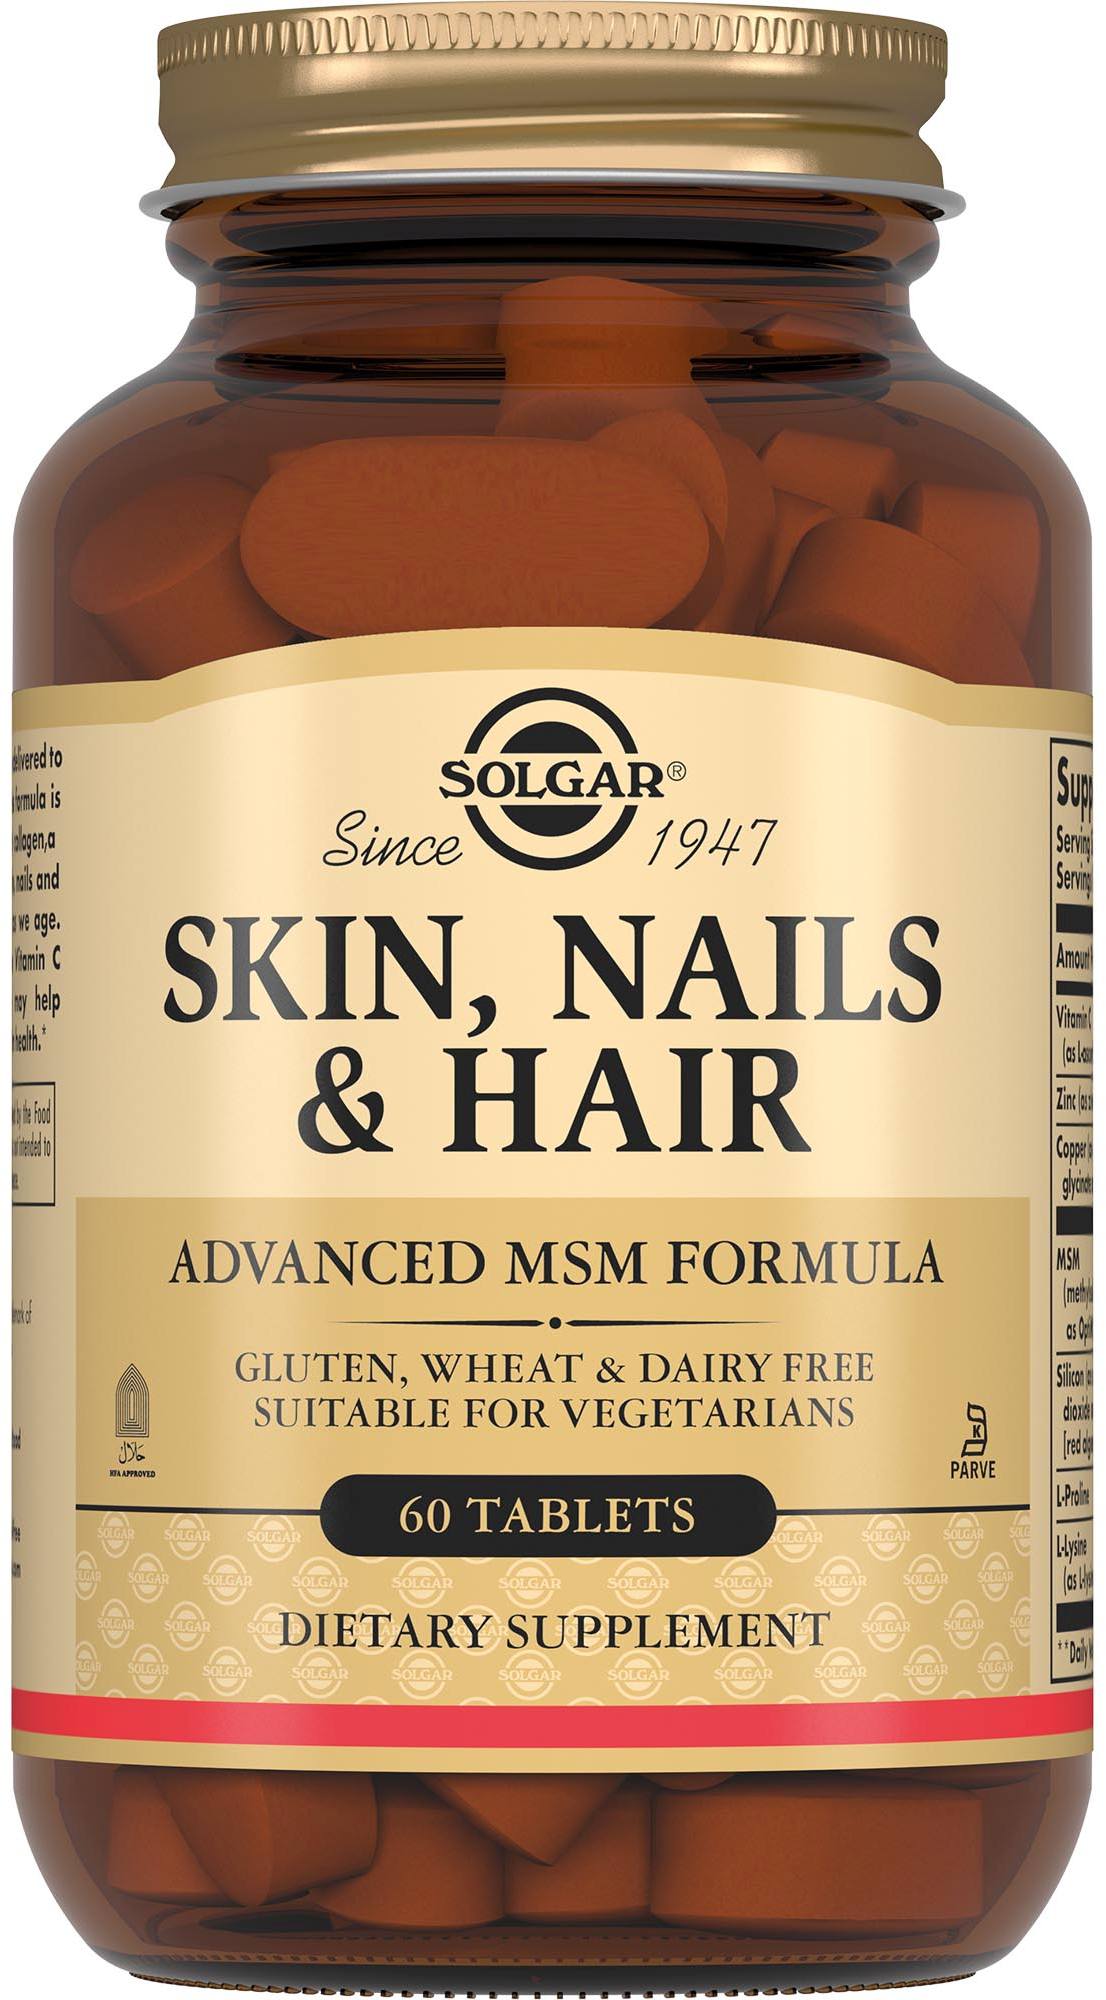 Солгар для кожи, ногтей и волос, таблетки, 60 шт. solgar кожа ногти волосы 1397 мг